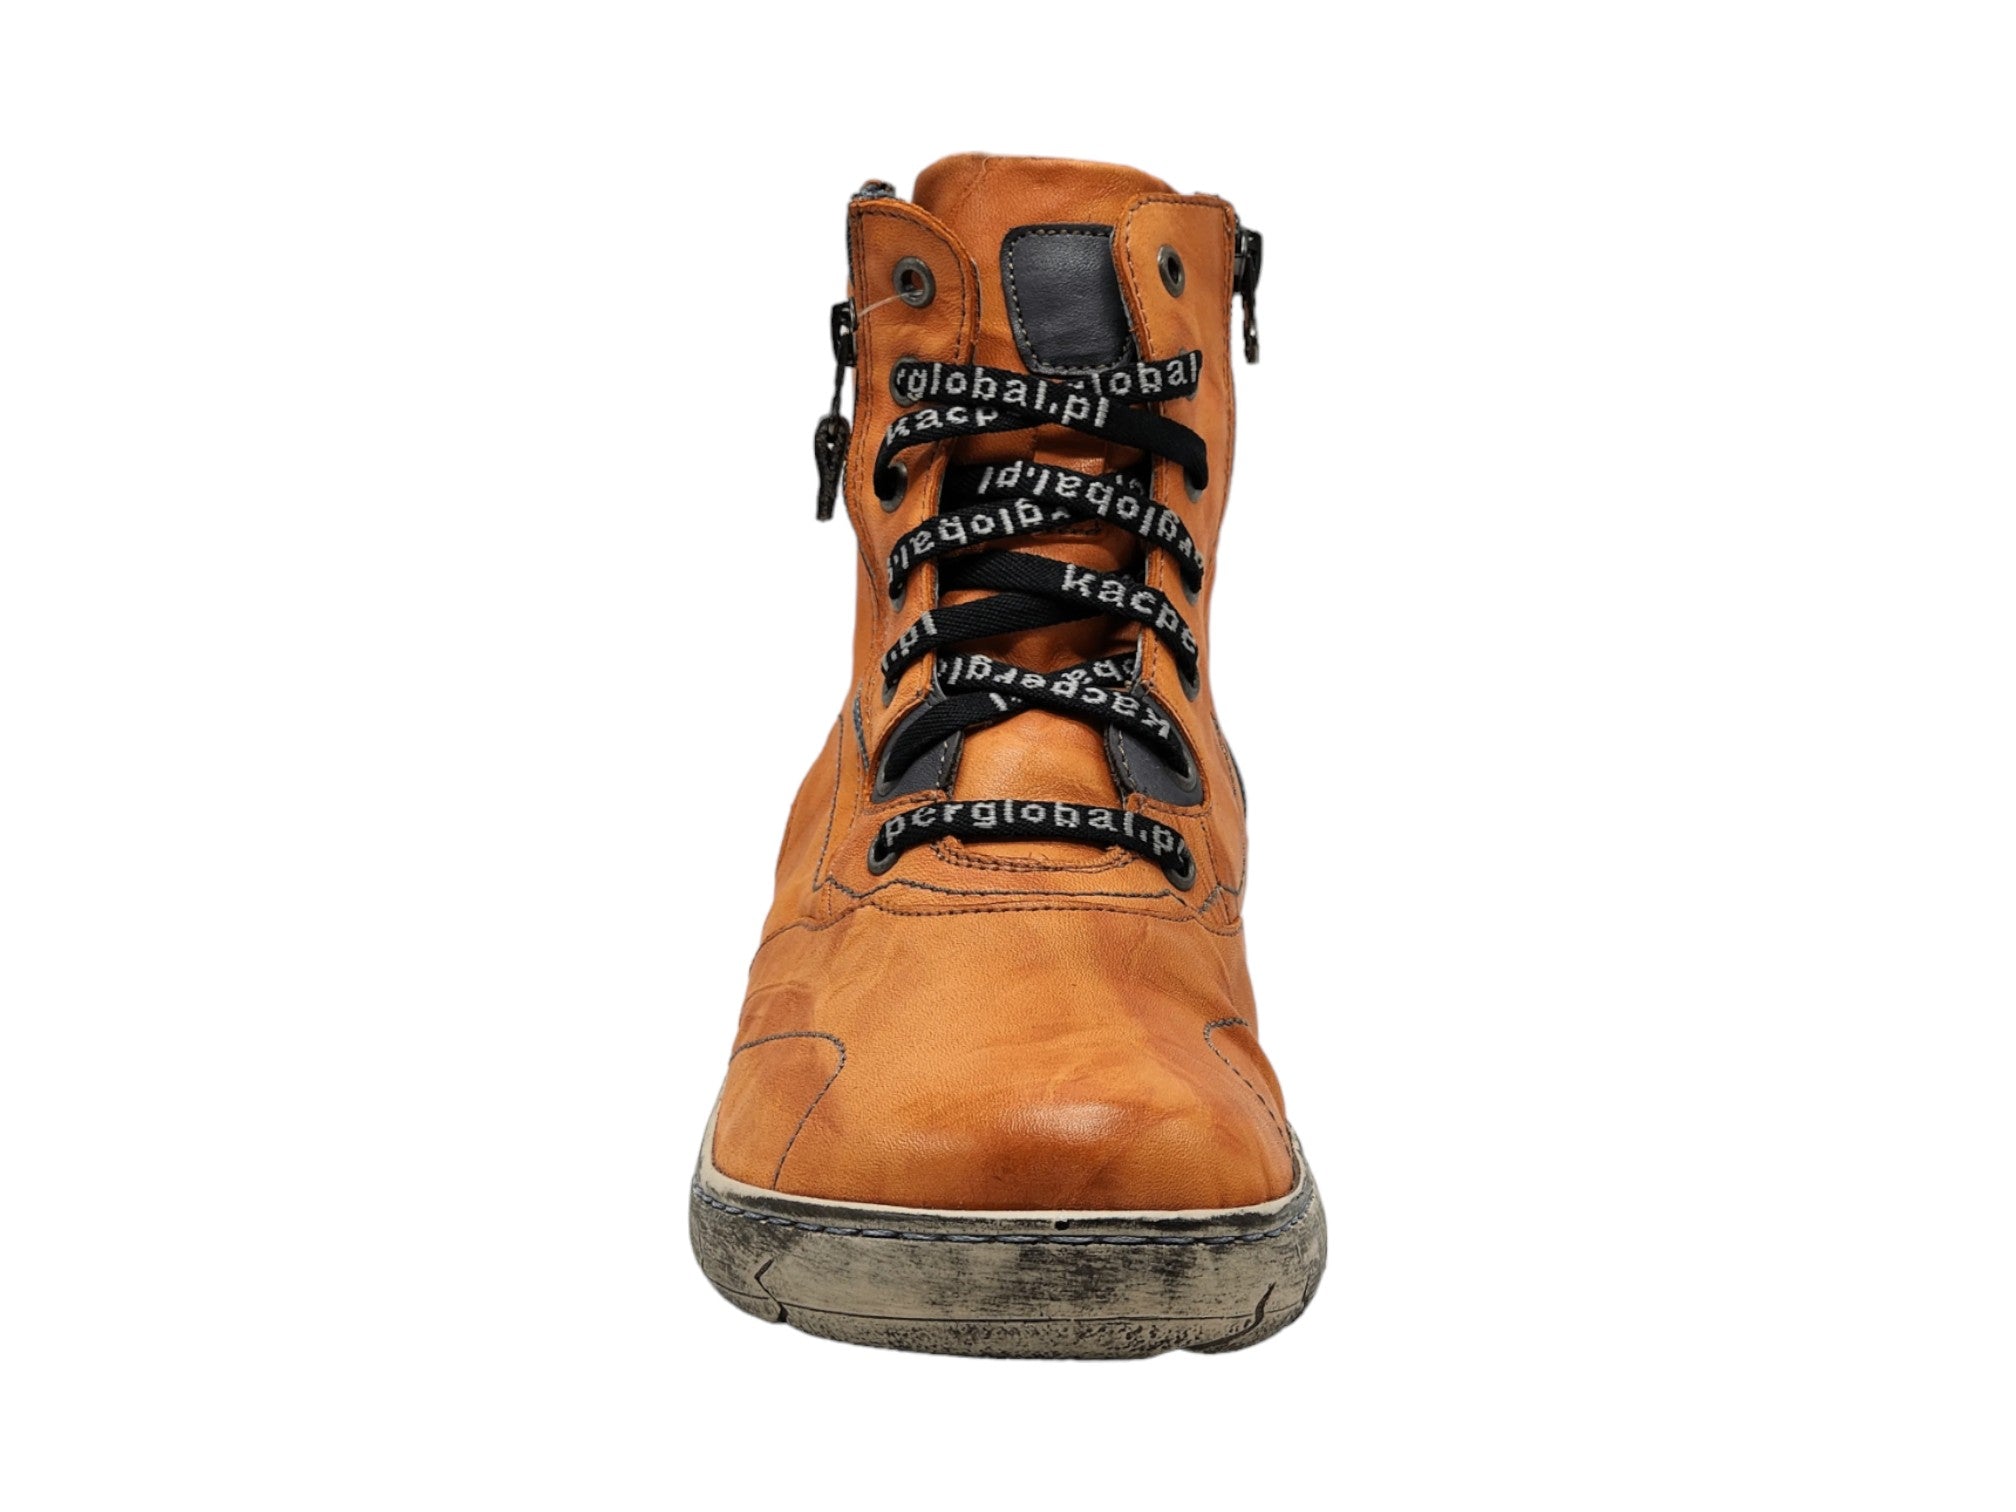 Kacper Leeloo Sneaker Boot - Women's